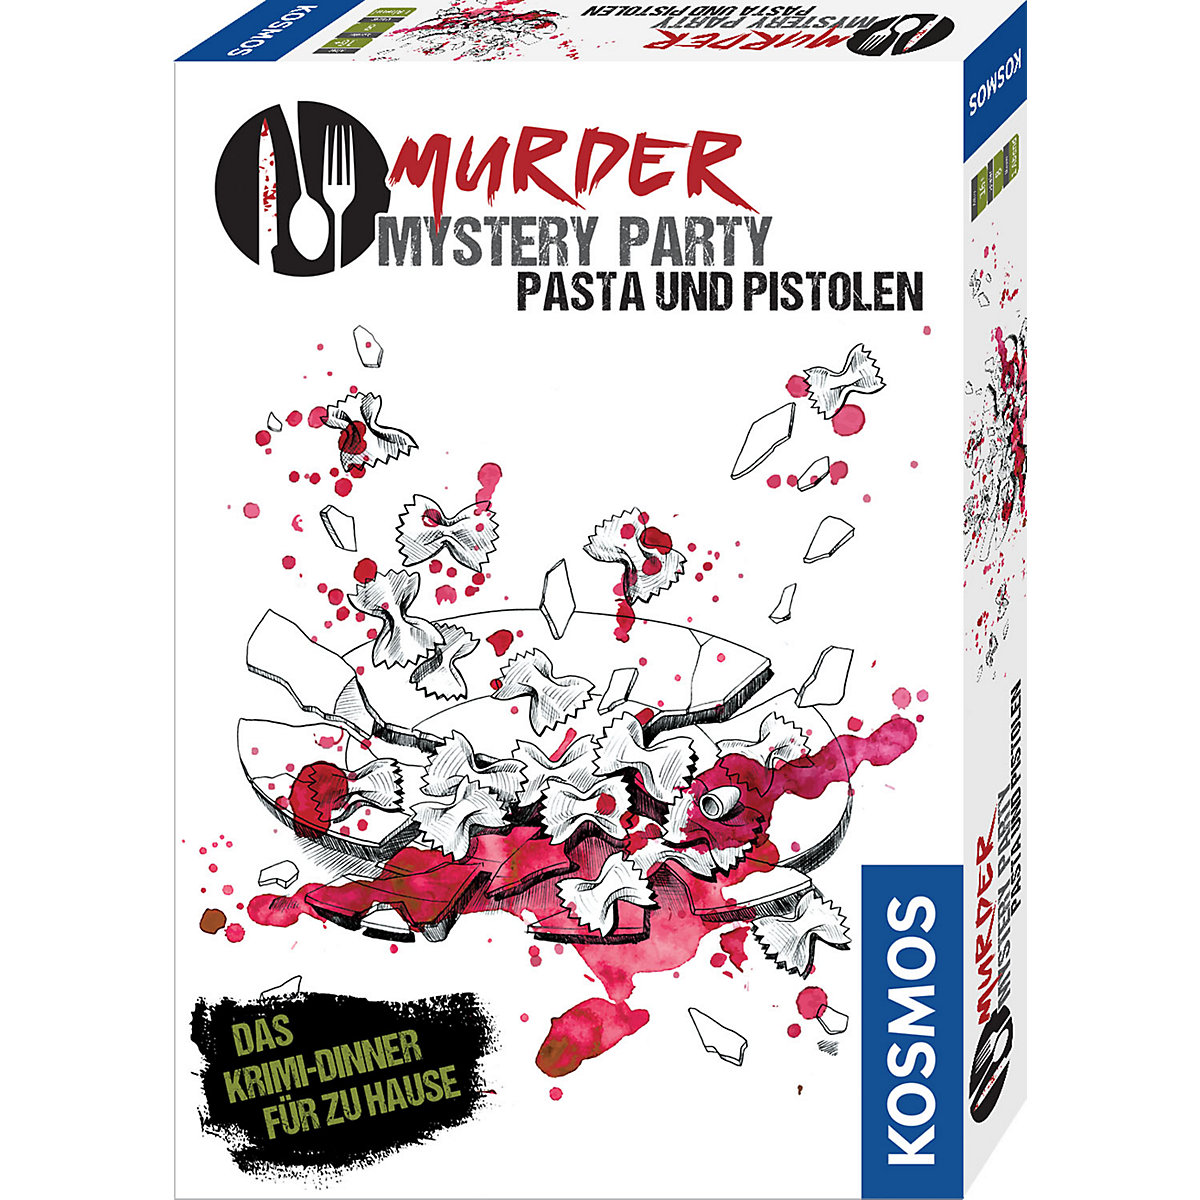 Kosmos Murder Mystery Party Pasta & Pistolen